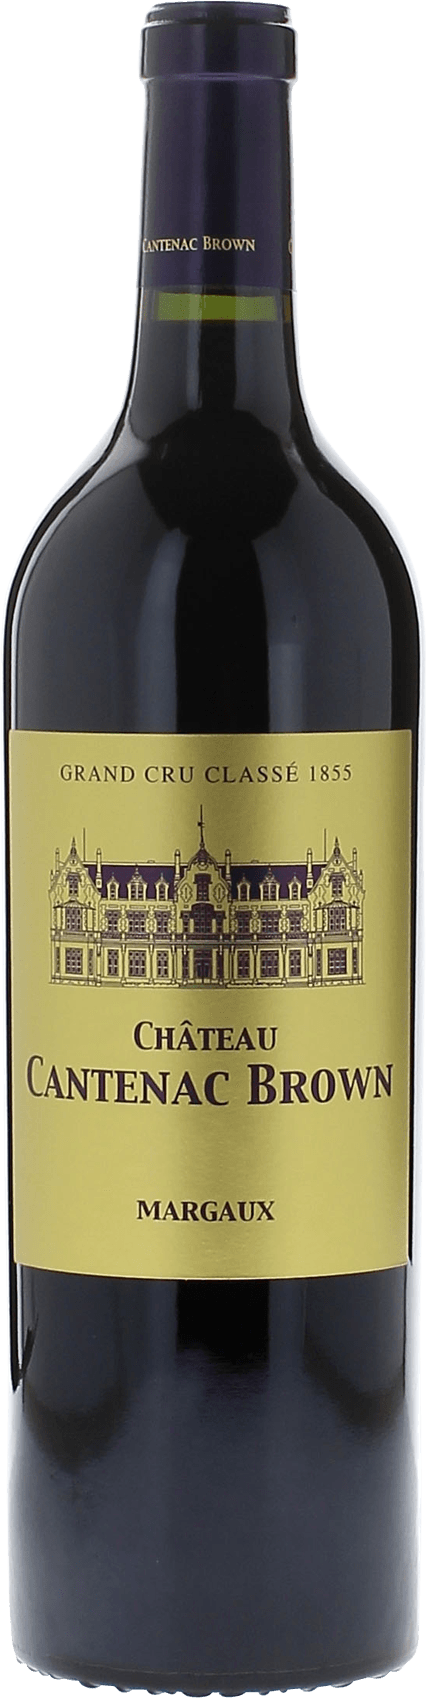 Cantenac brown 1996 2me Grand cru class Margaux, Bordeaux rouge